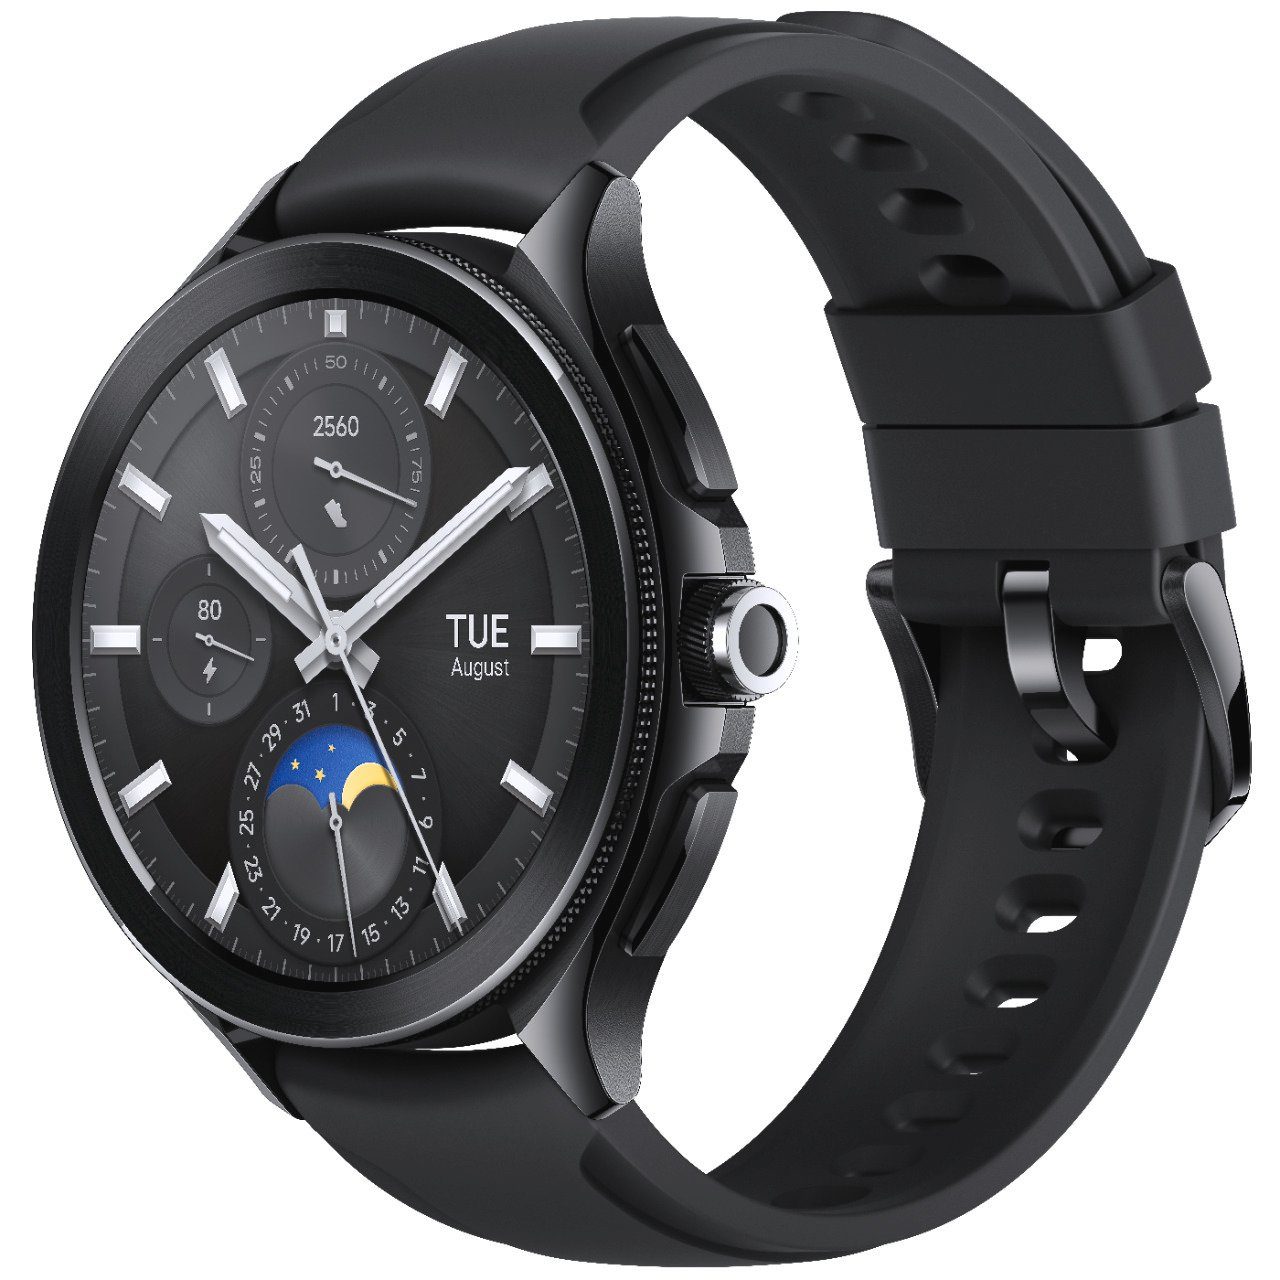 Xiaomi Watch 2 Pro - 4G LTE mit Leder Armband Smartwatch (3,63 cm/1,43 Zoll), mit Edelstahlgehäuse und LTE-Konnektivität, 3,63 cm (1,43 Zoll) Always-on-AMOLED-Display